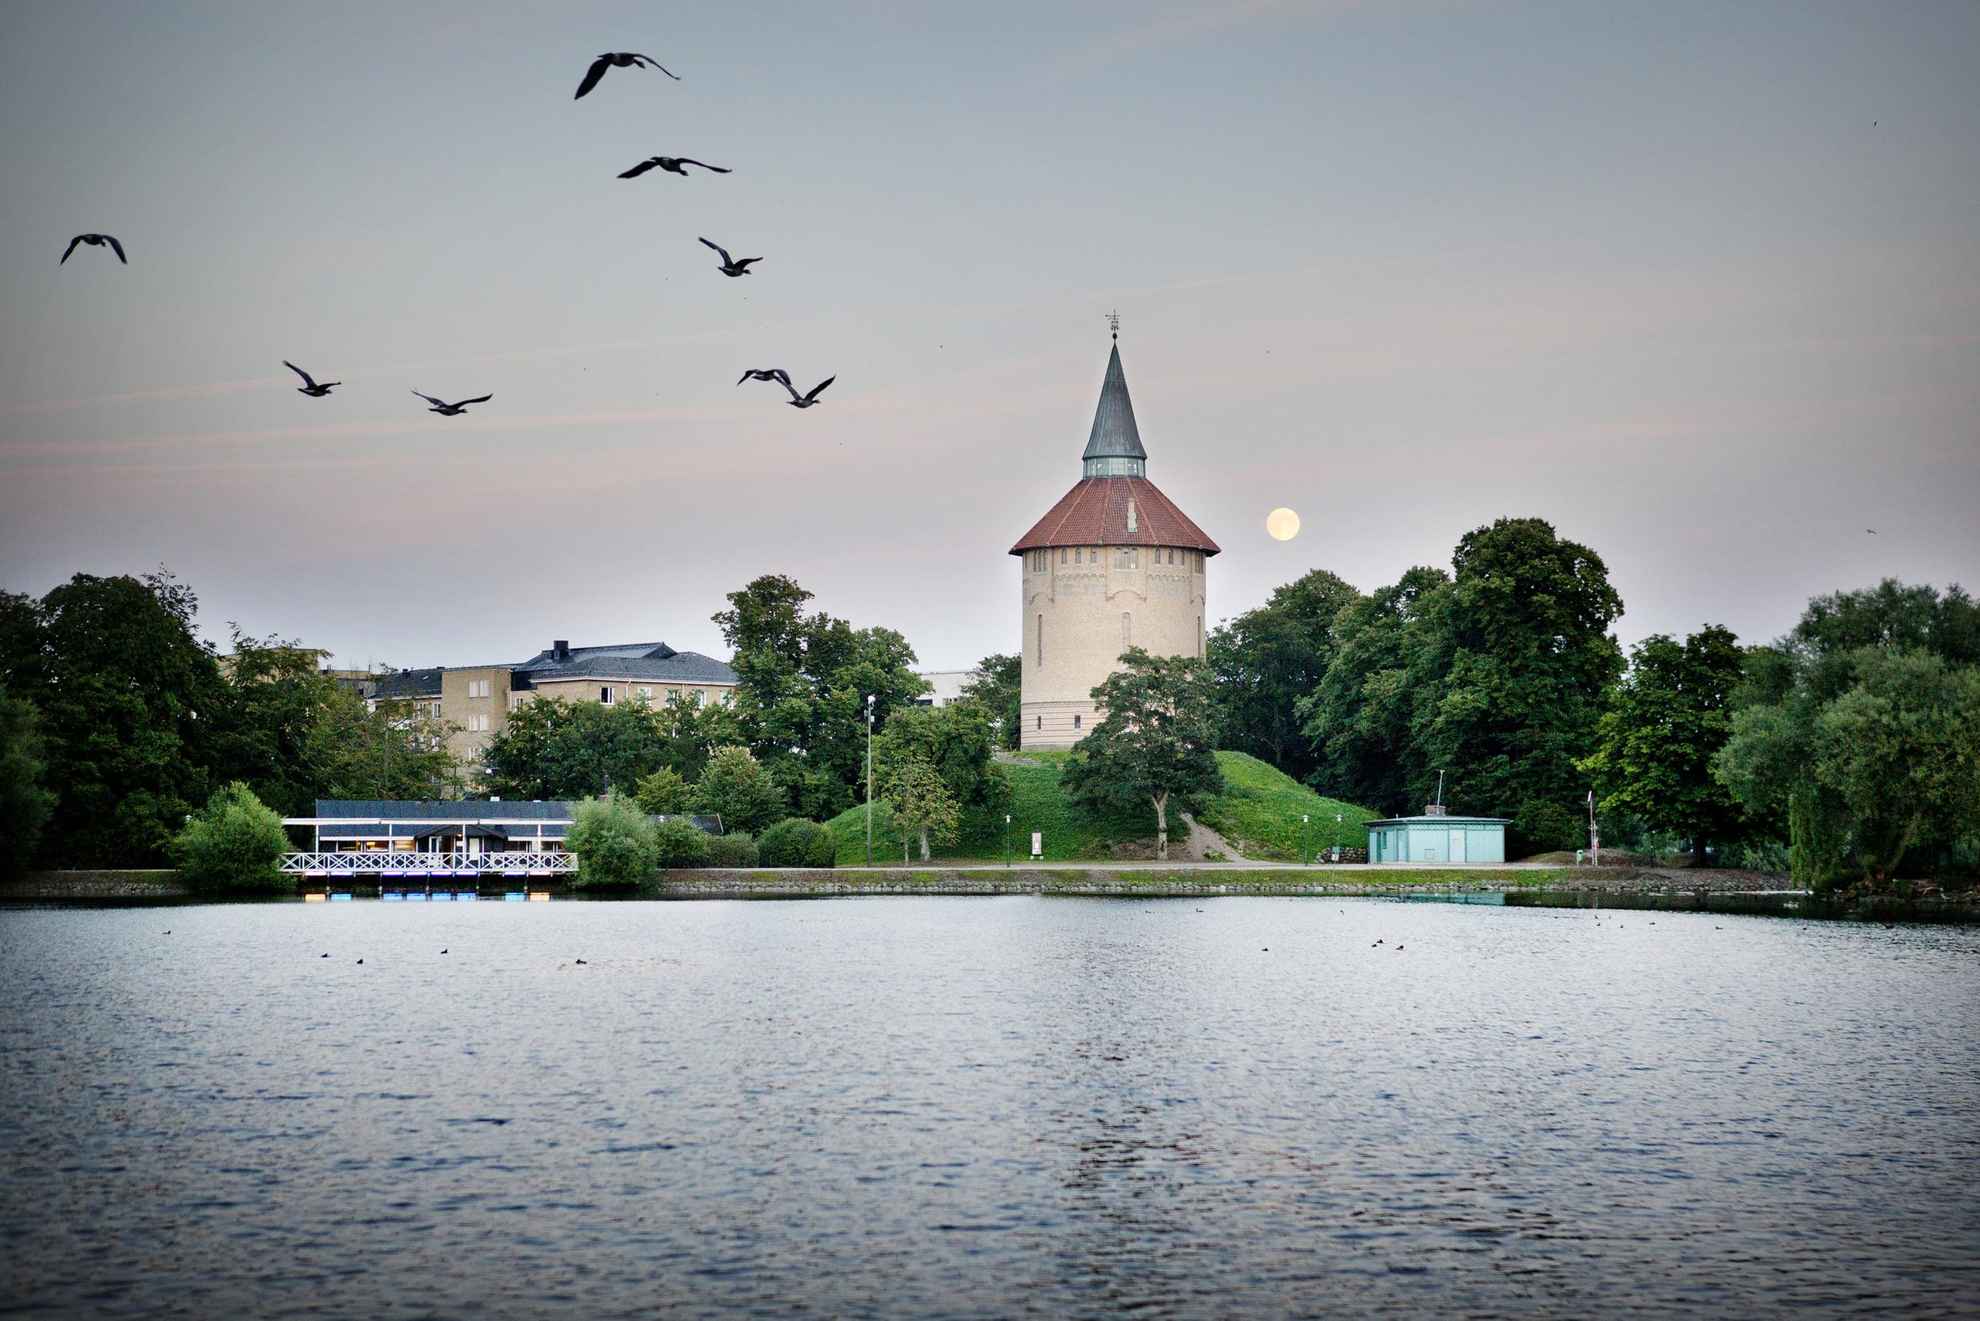 Sur la photo, on voit une tour du parc Pildammsparken entourée de verdure. Devant la tour se trouve un étang et des oiseaux qui le survolent.